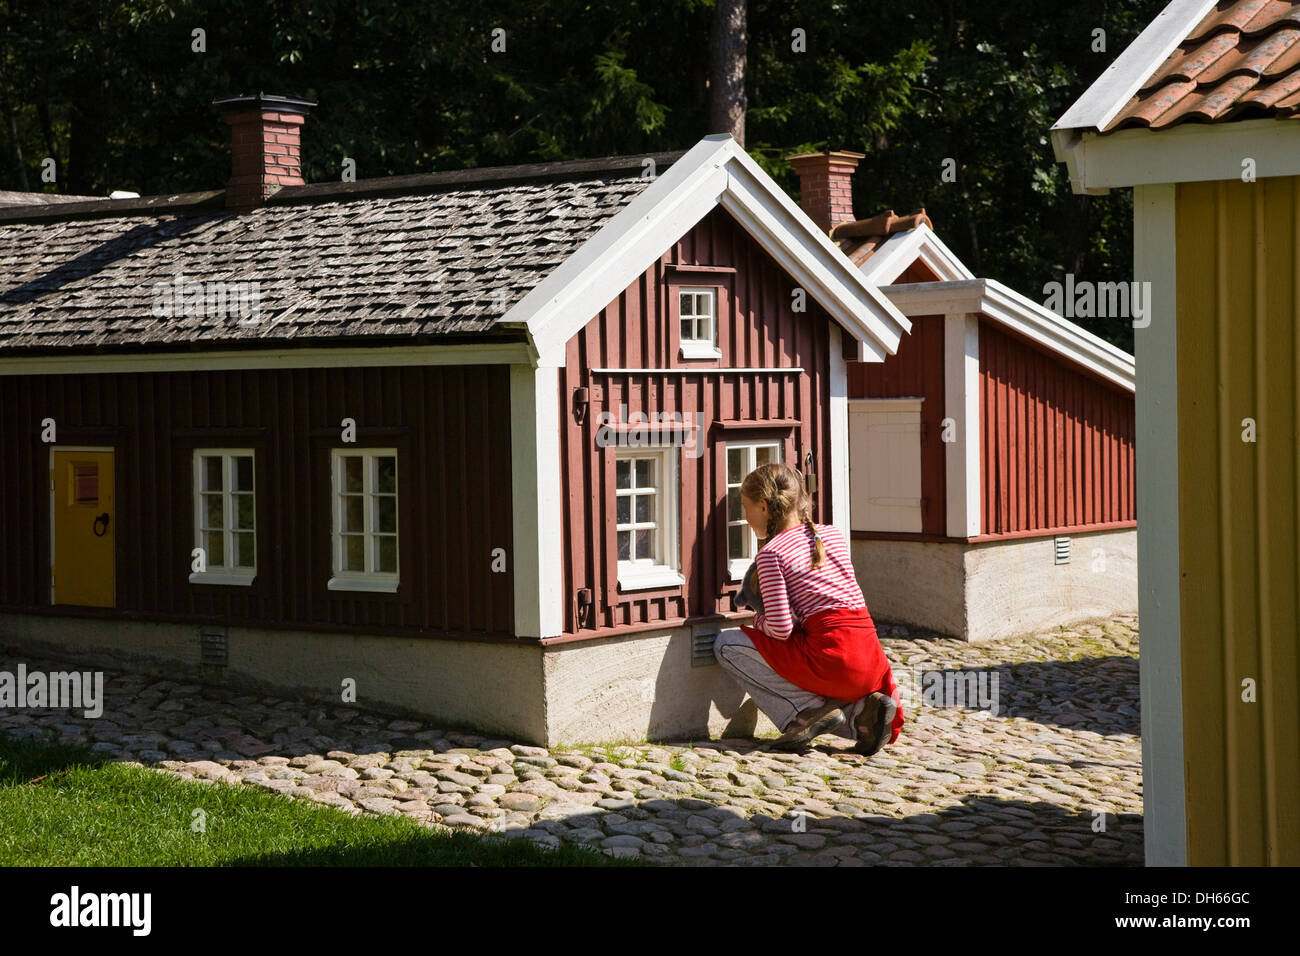 Astrid Lindgren Vaerld or Astrid Lindgren World theme park, Vimmerby, Smaland, South Sweden, Europe Stock Photo